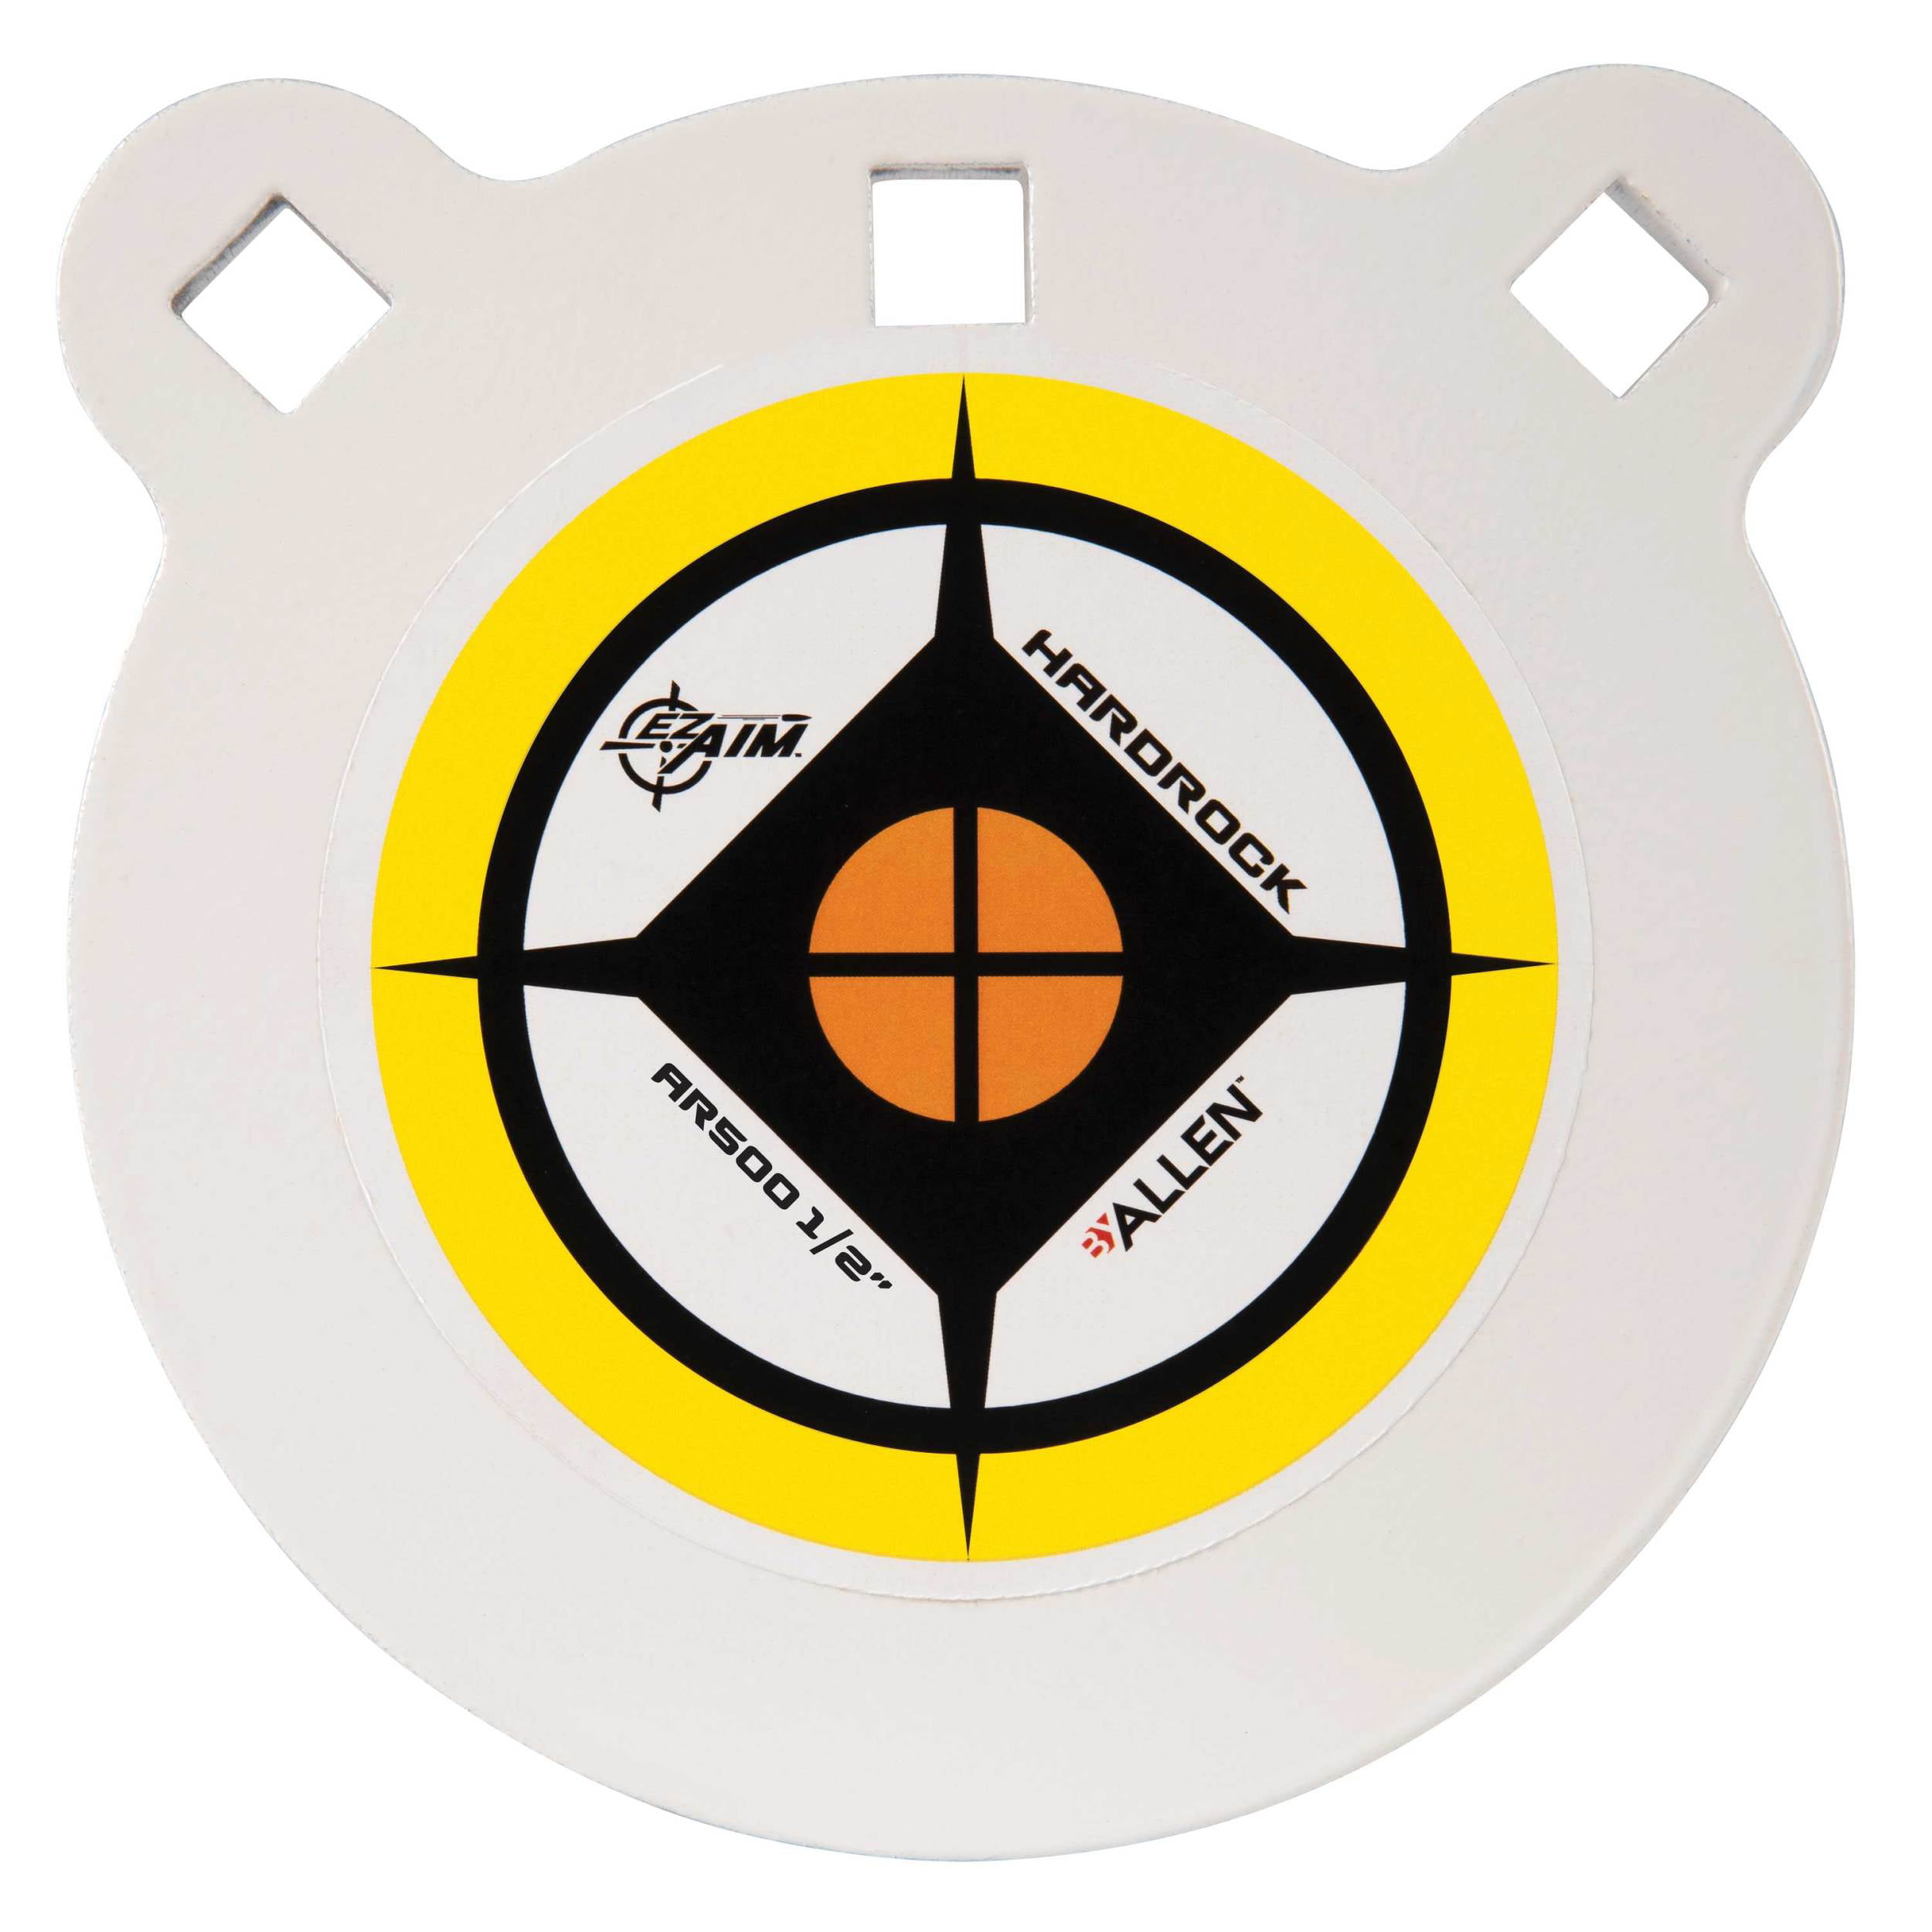 One AR500 Steel Target Circle 1/2" x 10" Painted Black Shooting Practice Range 